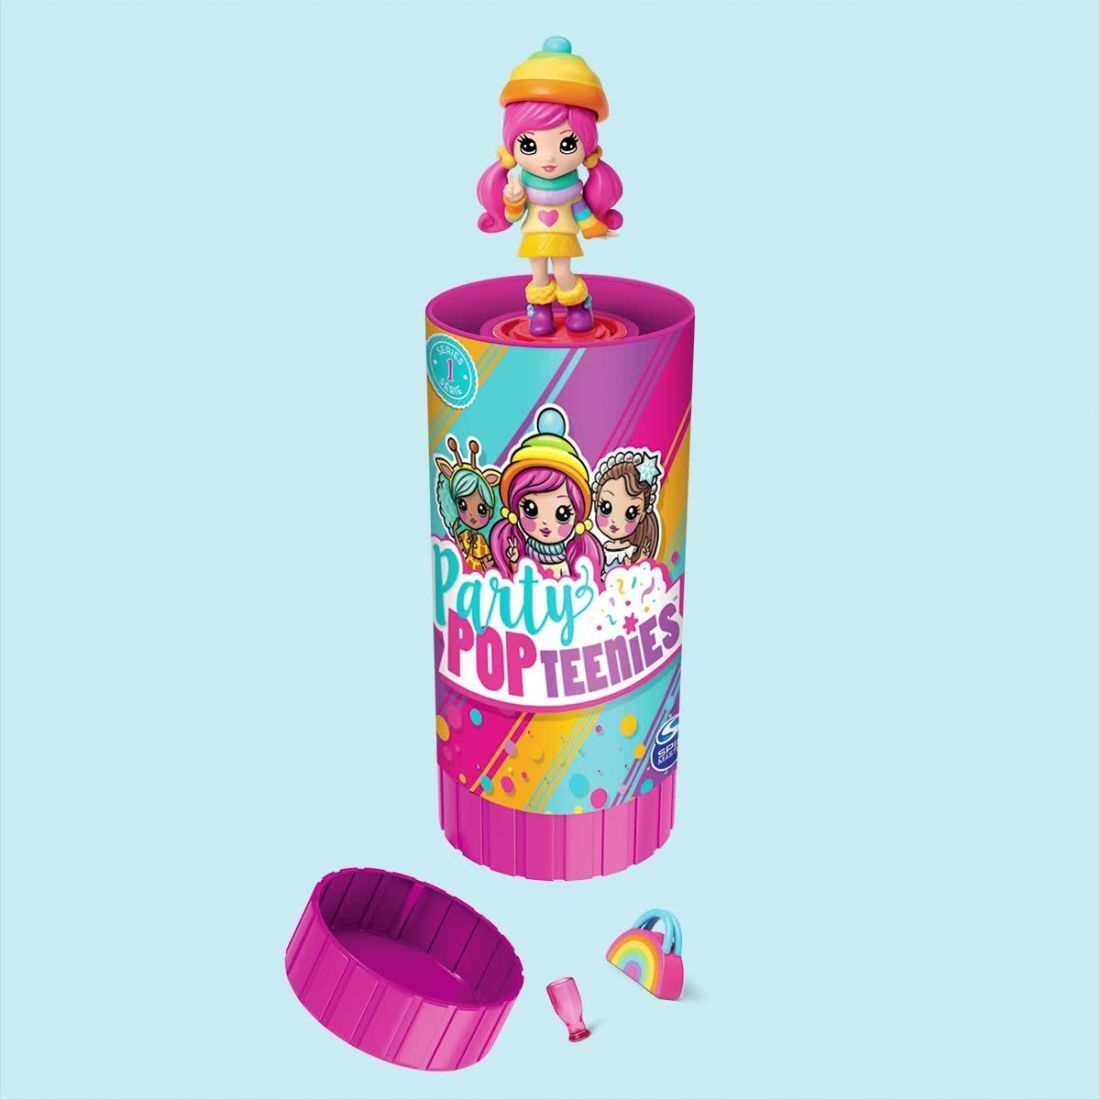 Papusa - Party surpriza cu confetti